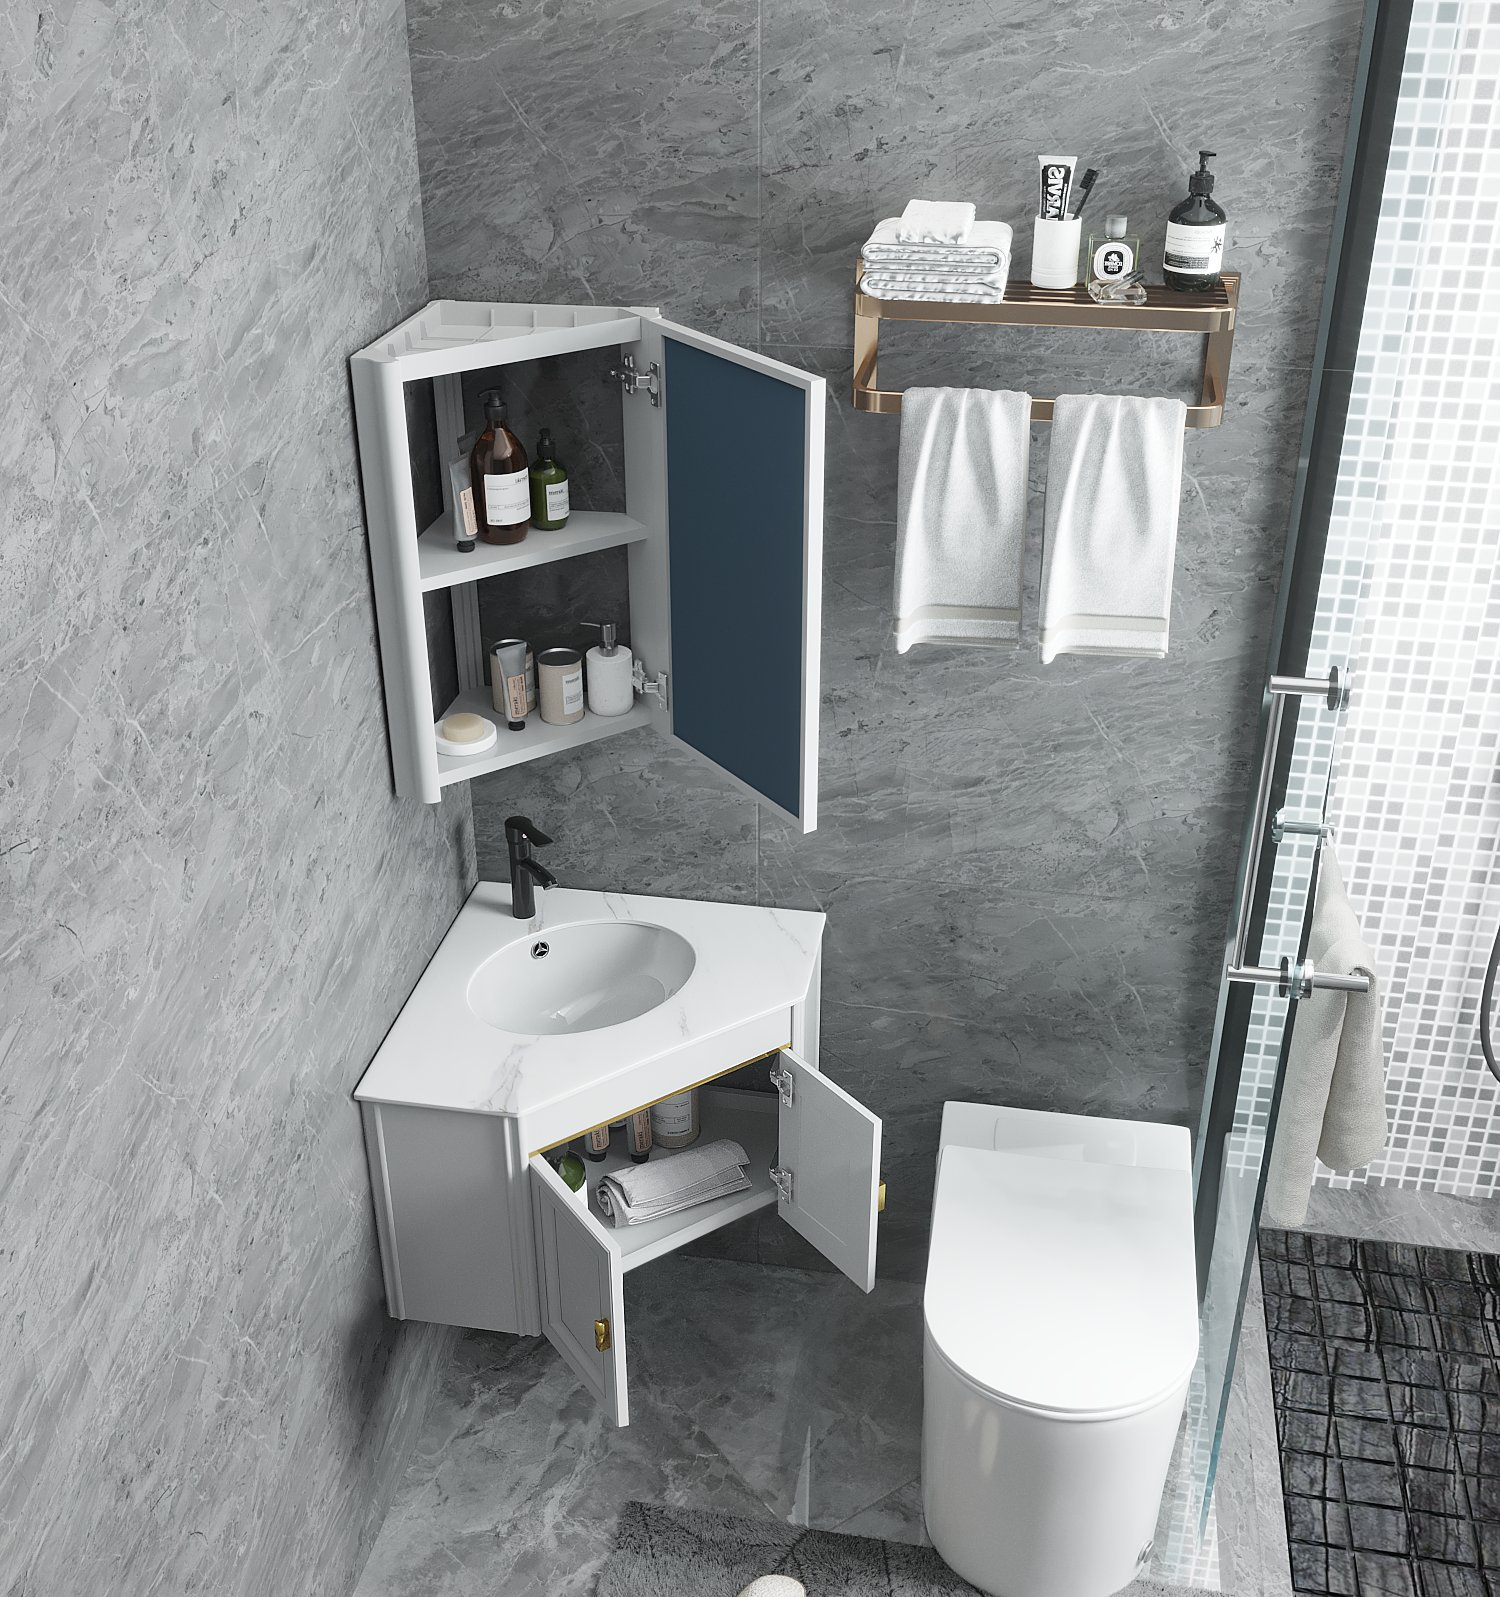 浴室三角形洗漱池手面盆镜柜太空铝挂墙式转角浴室柜组合小户型30|ru